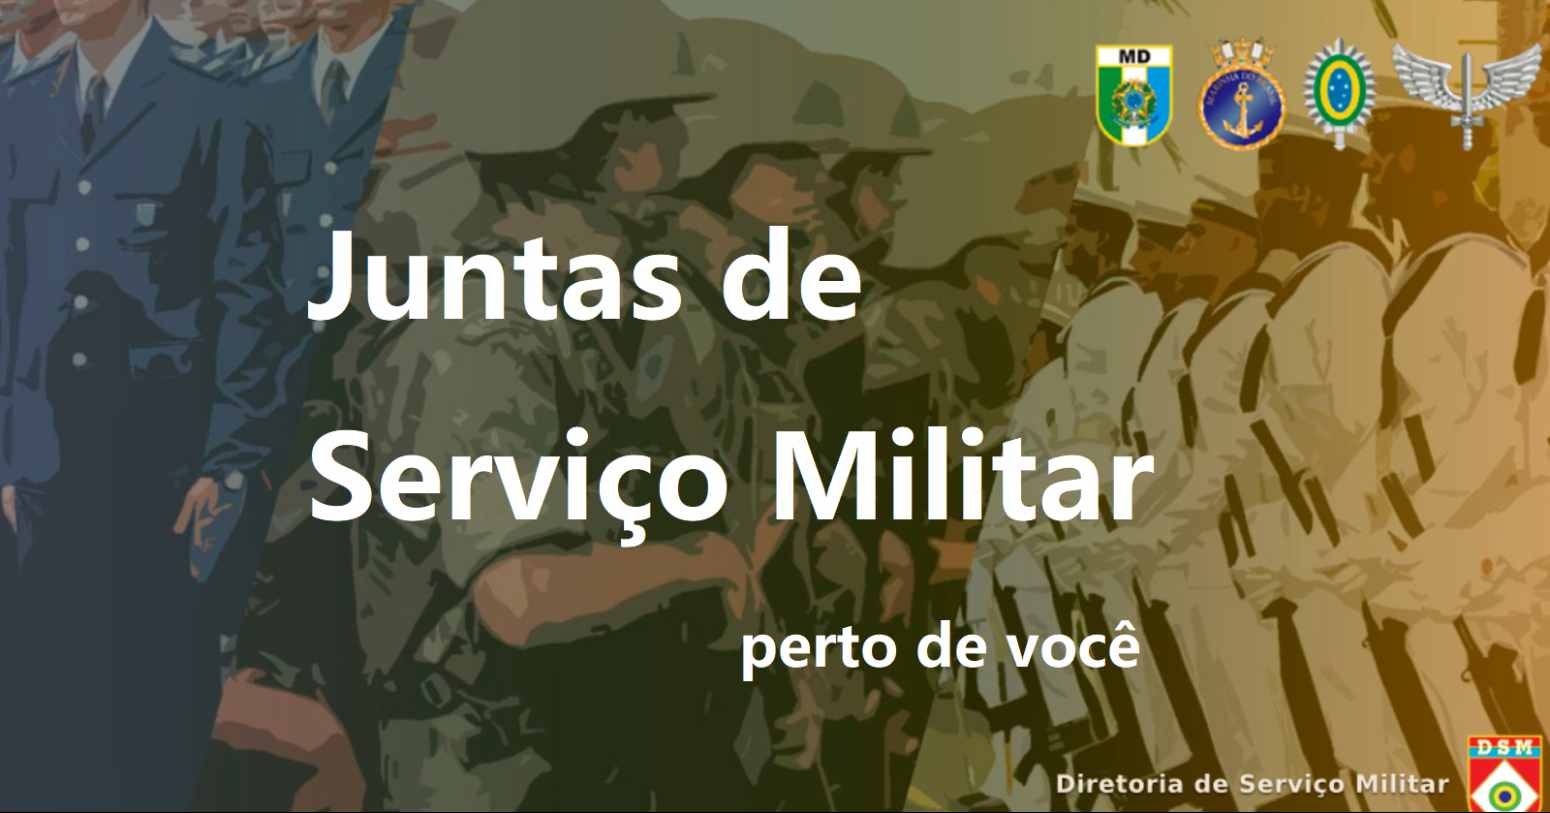 JSM RJ – lista completa das Juntas de Serviço Militar em Rio de Janeiro